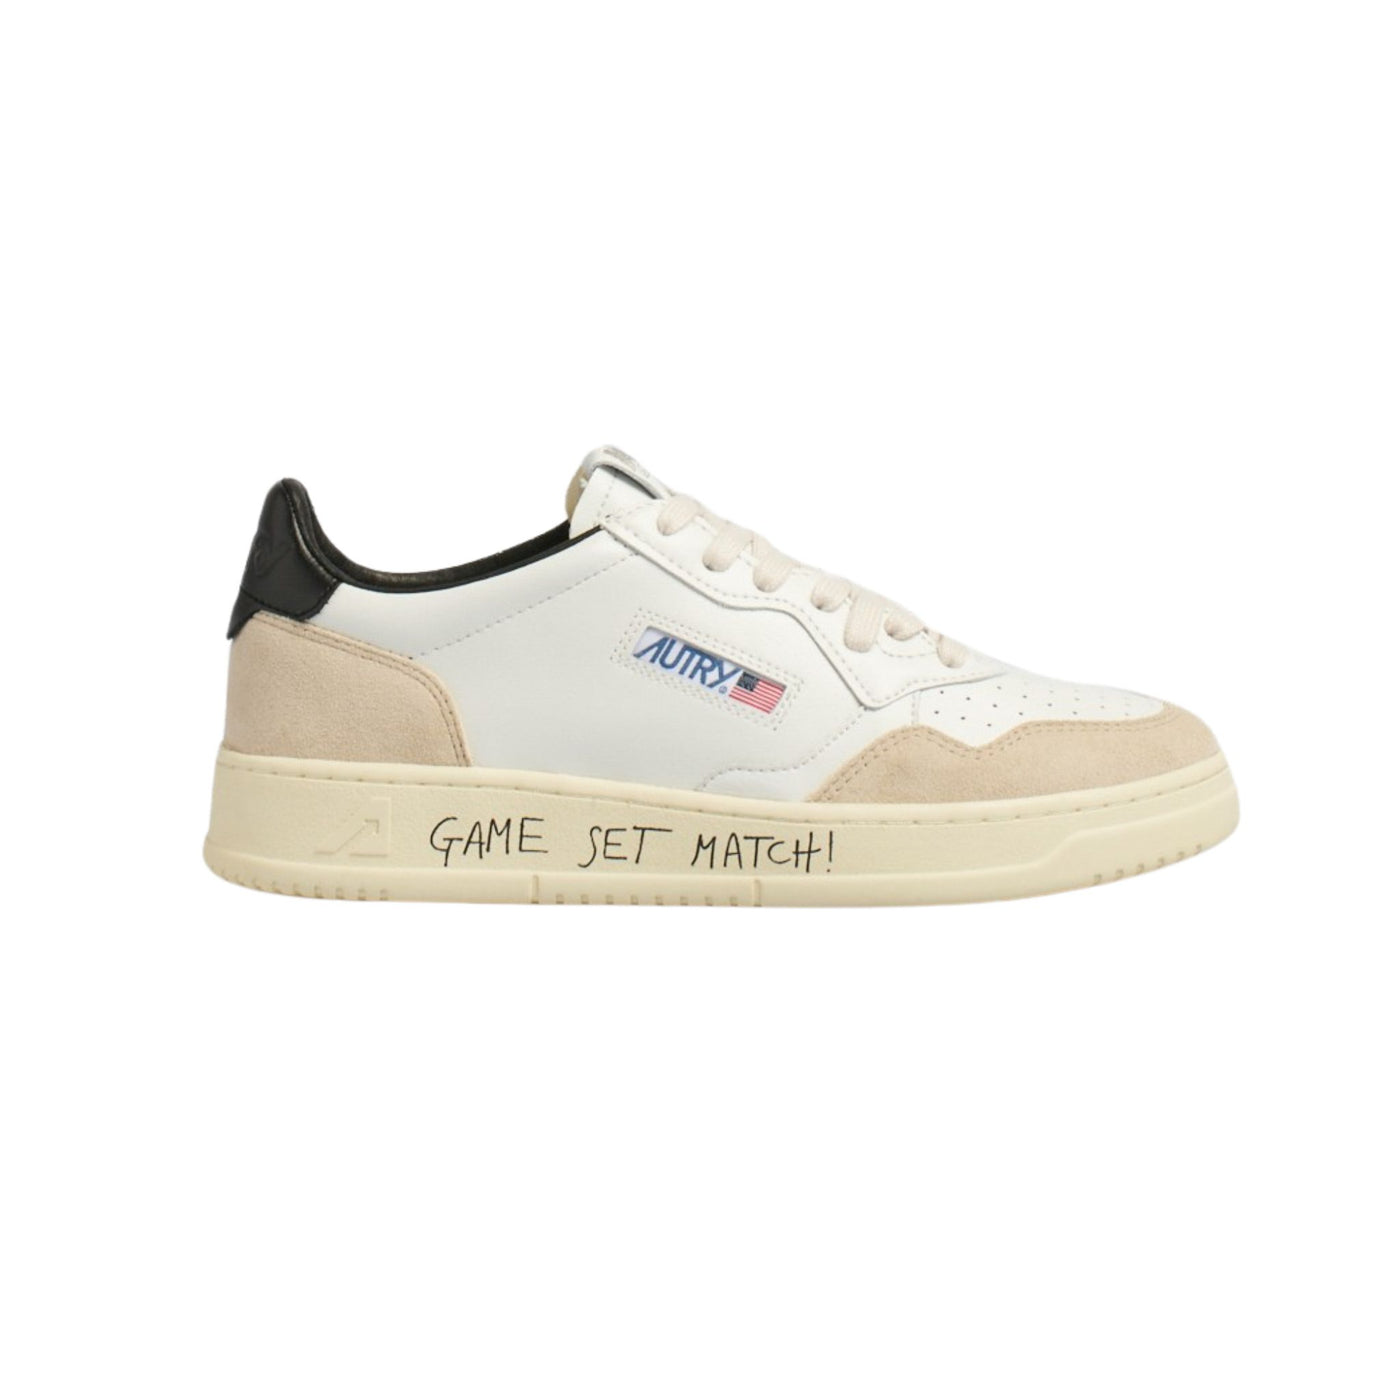 Sneakers con scritta "Game Set Match!" sulla suola 